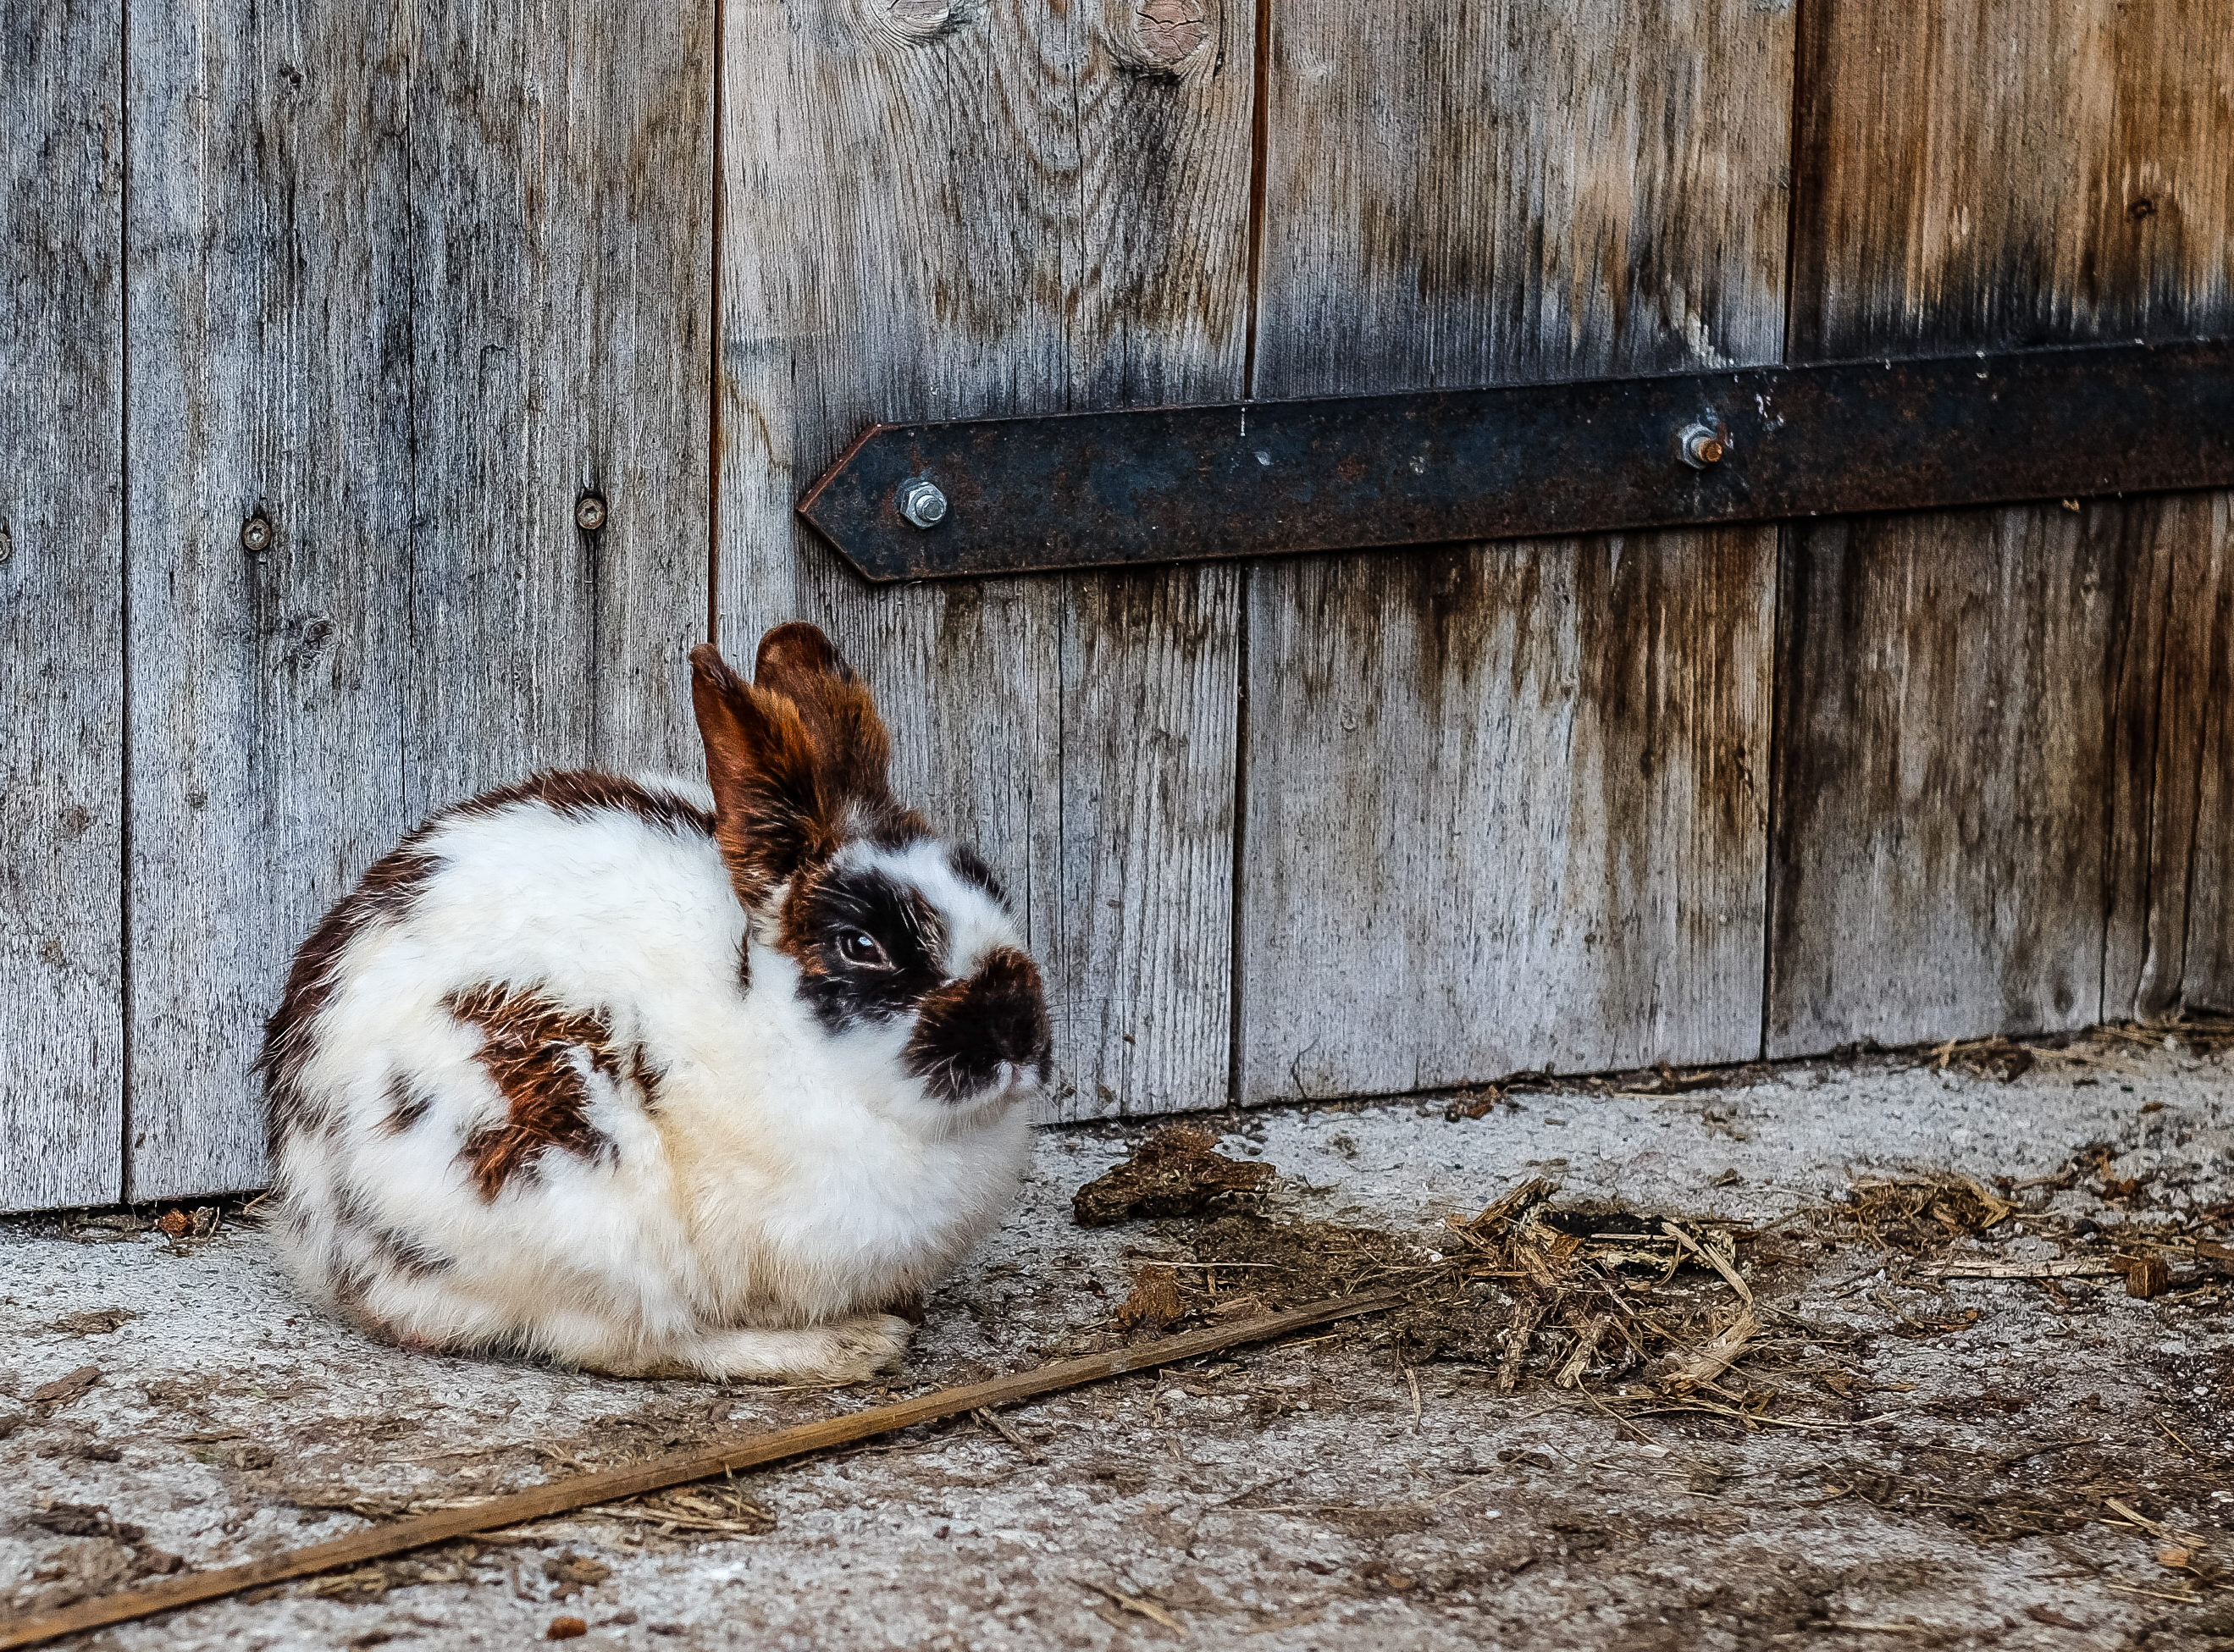 Access to Markets: Black Rabbit Farm, Media, and Marketing